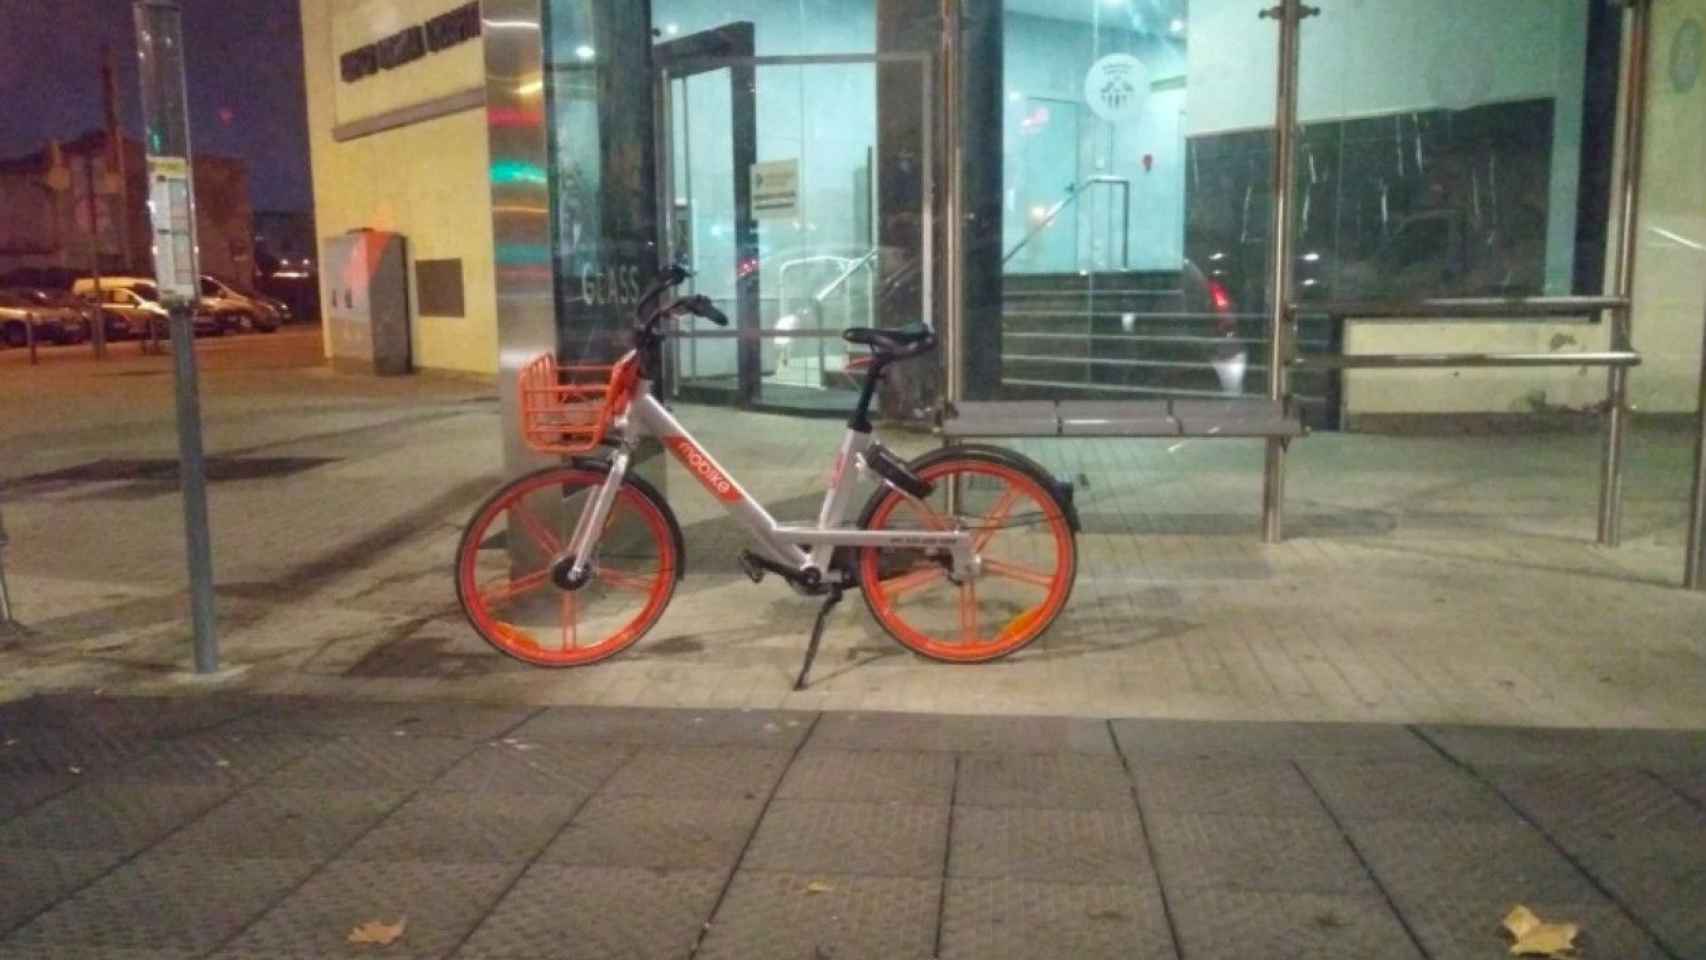 Bicicleta de Mobike estacionada en una parada de autobús de l'Hospitalet / SUMEM